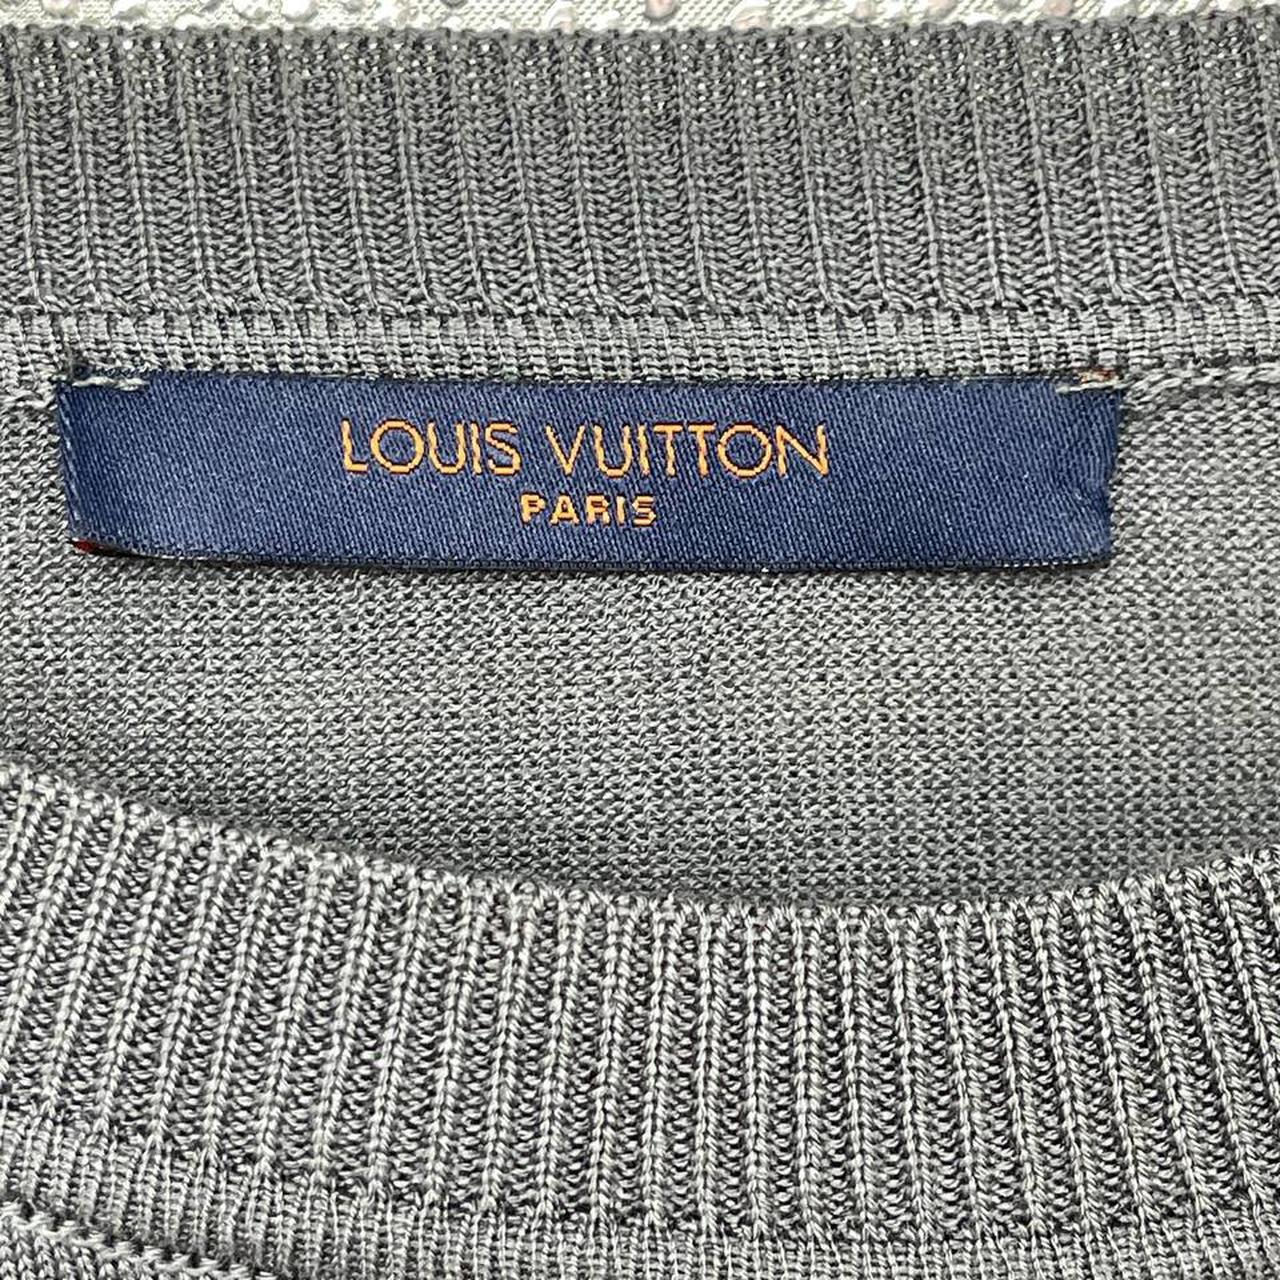 Louis Vuitton Hawaiian Tapestry Shirt XL #louisvuitton - Depop